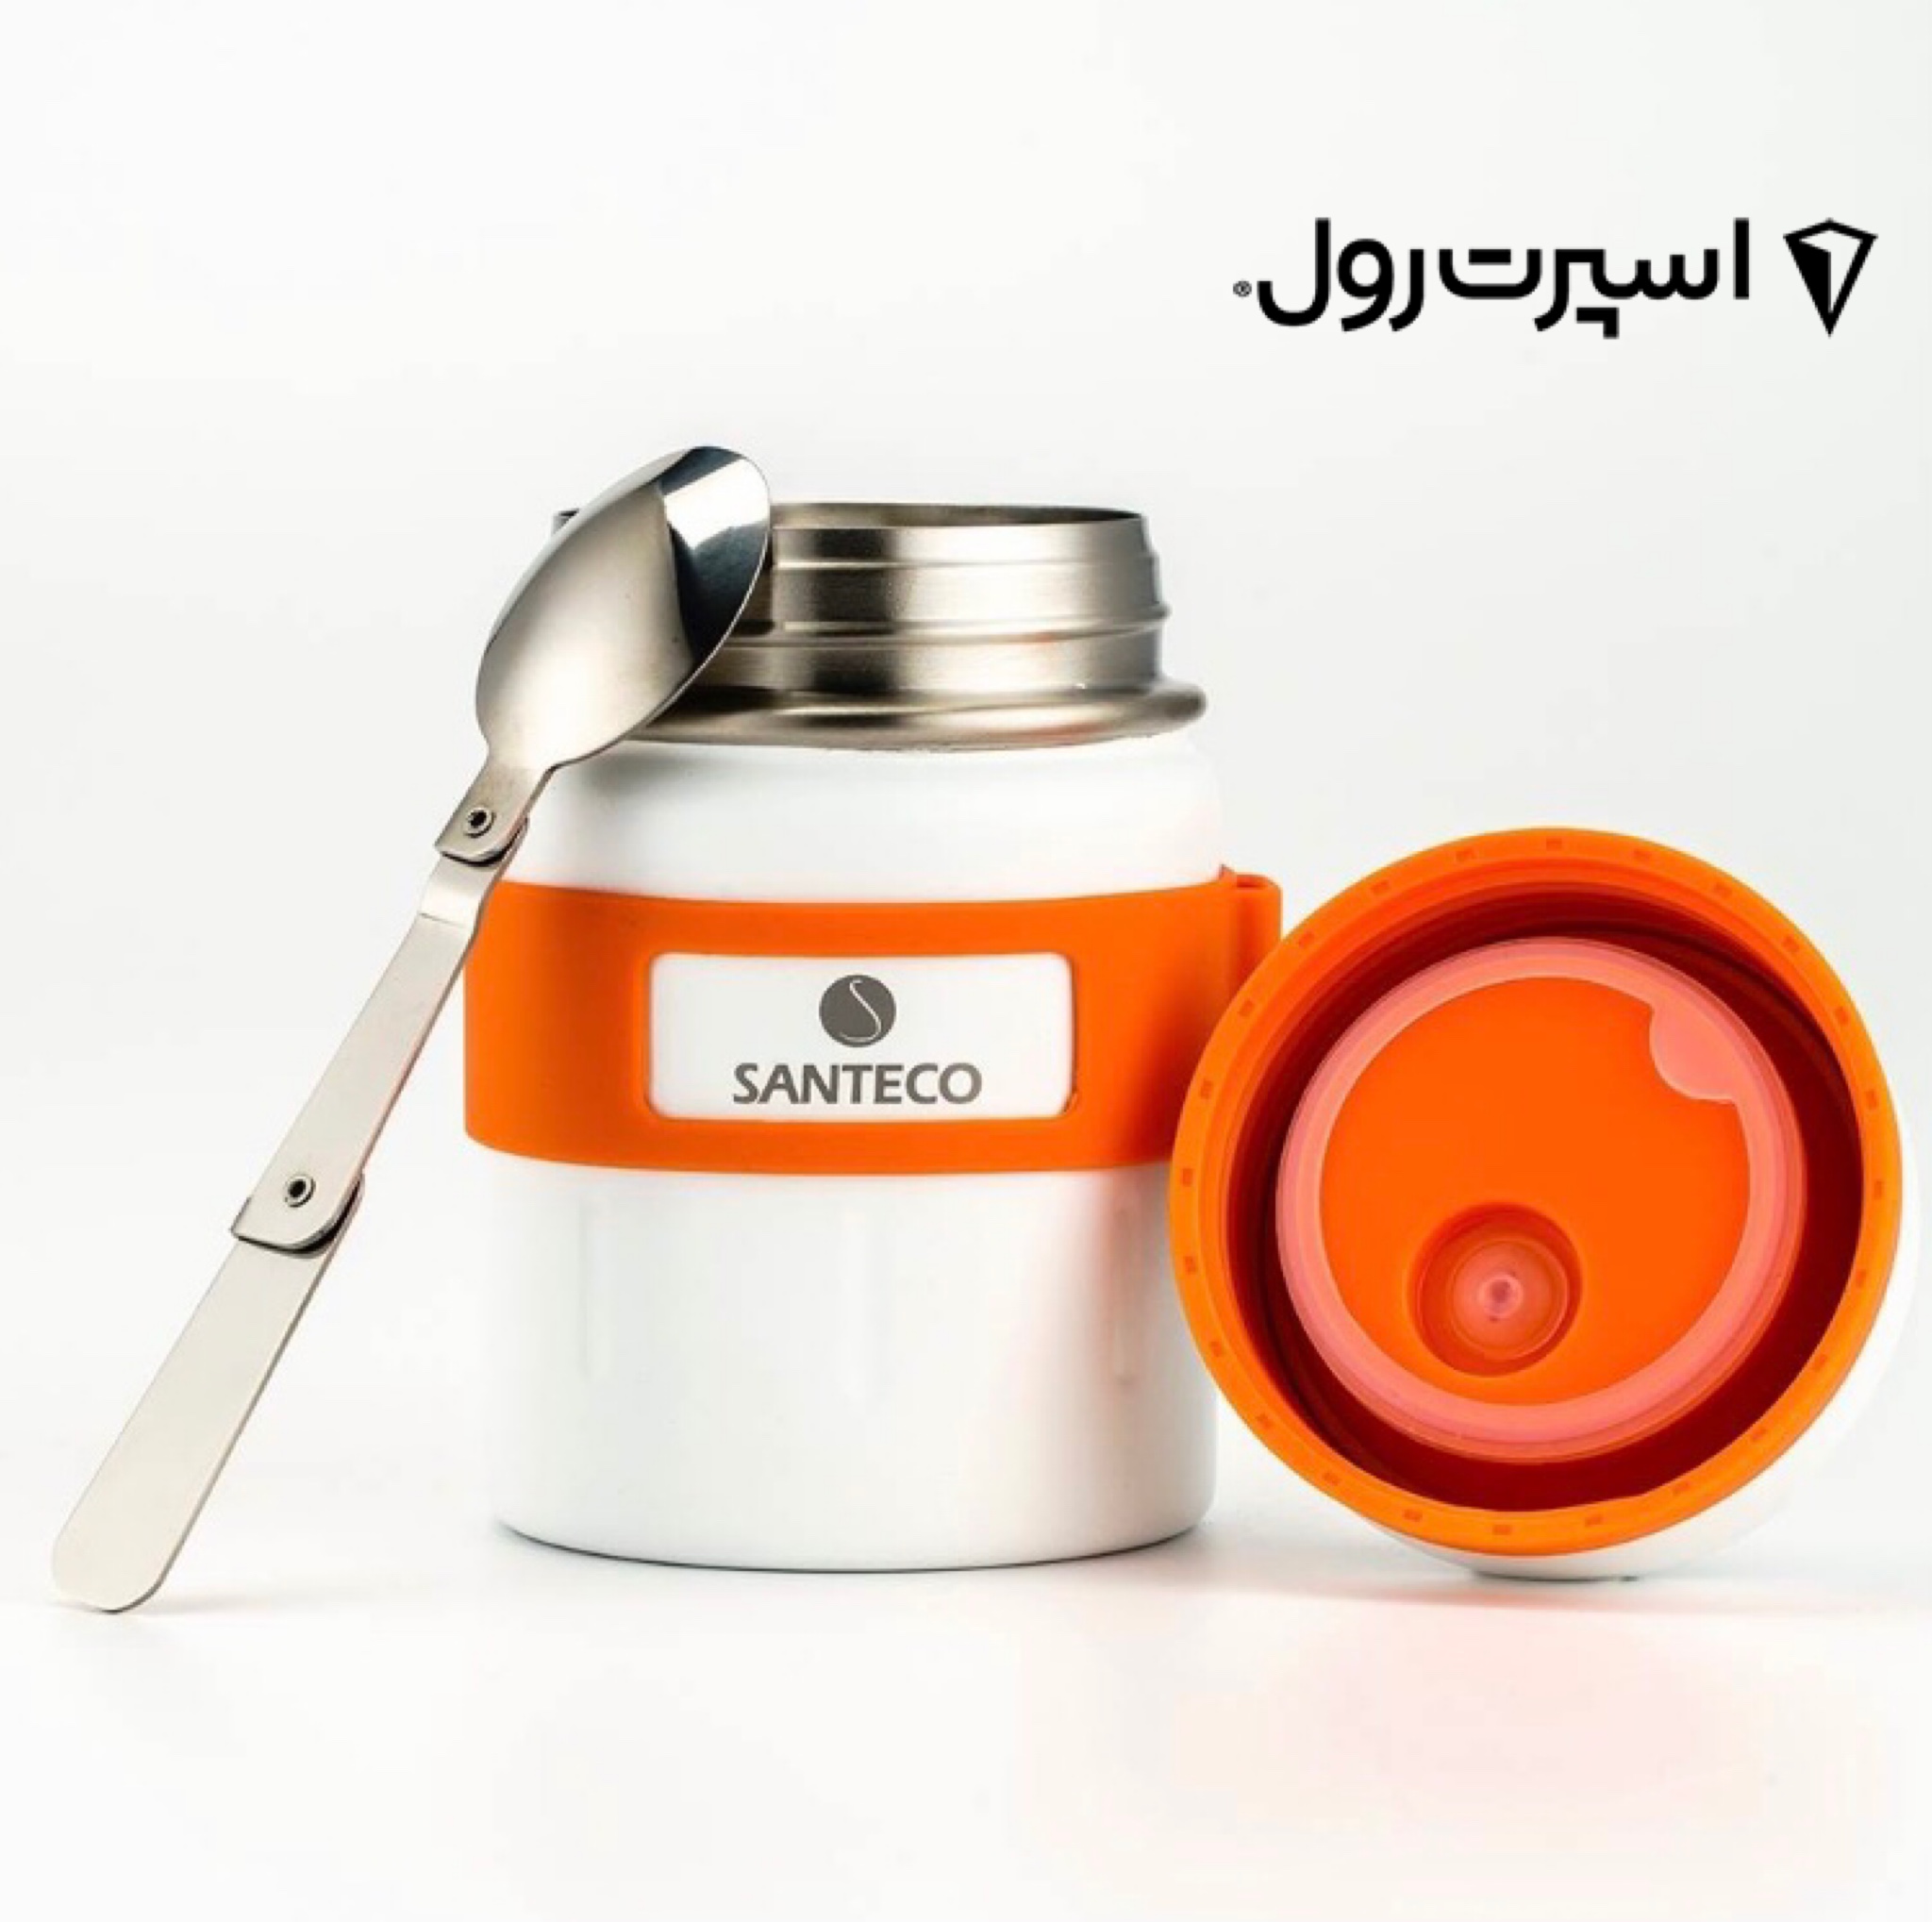 SANTECO Koge Thermal Food Jar With Spoon, 17 oz, Stainless Steel, Vacu